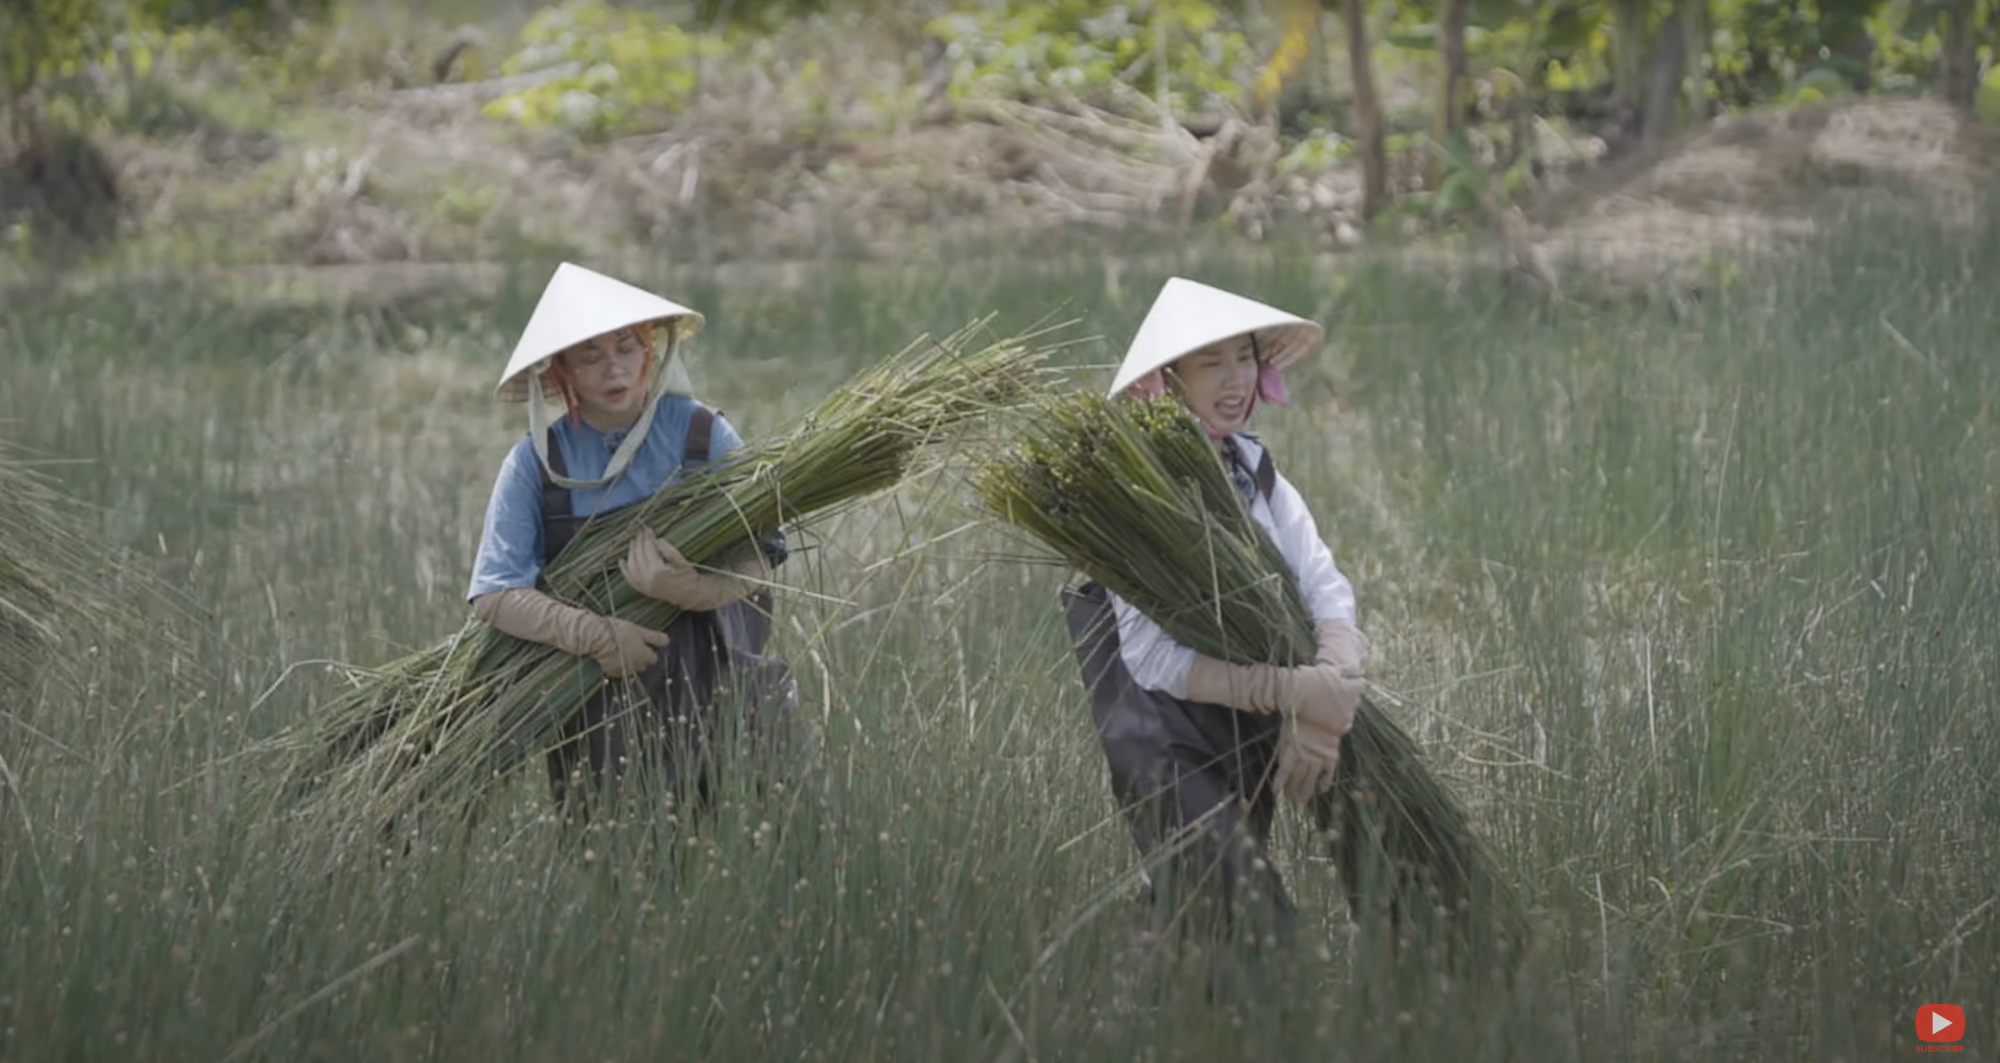 Thuỳ Tiên và Misthy trải nghiệm cắt cỏ bàng trong tập 1 của chương trình Nong dân